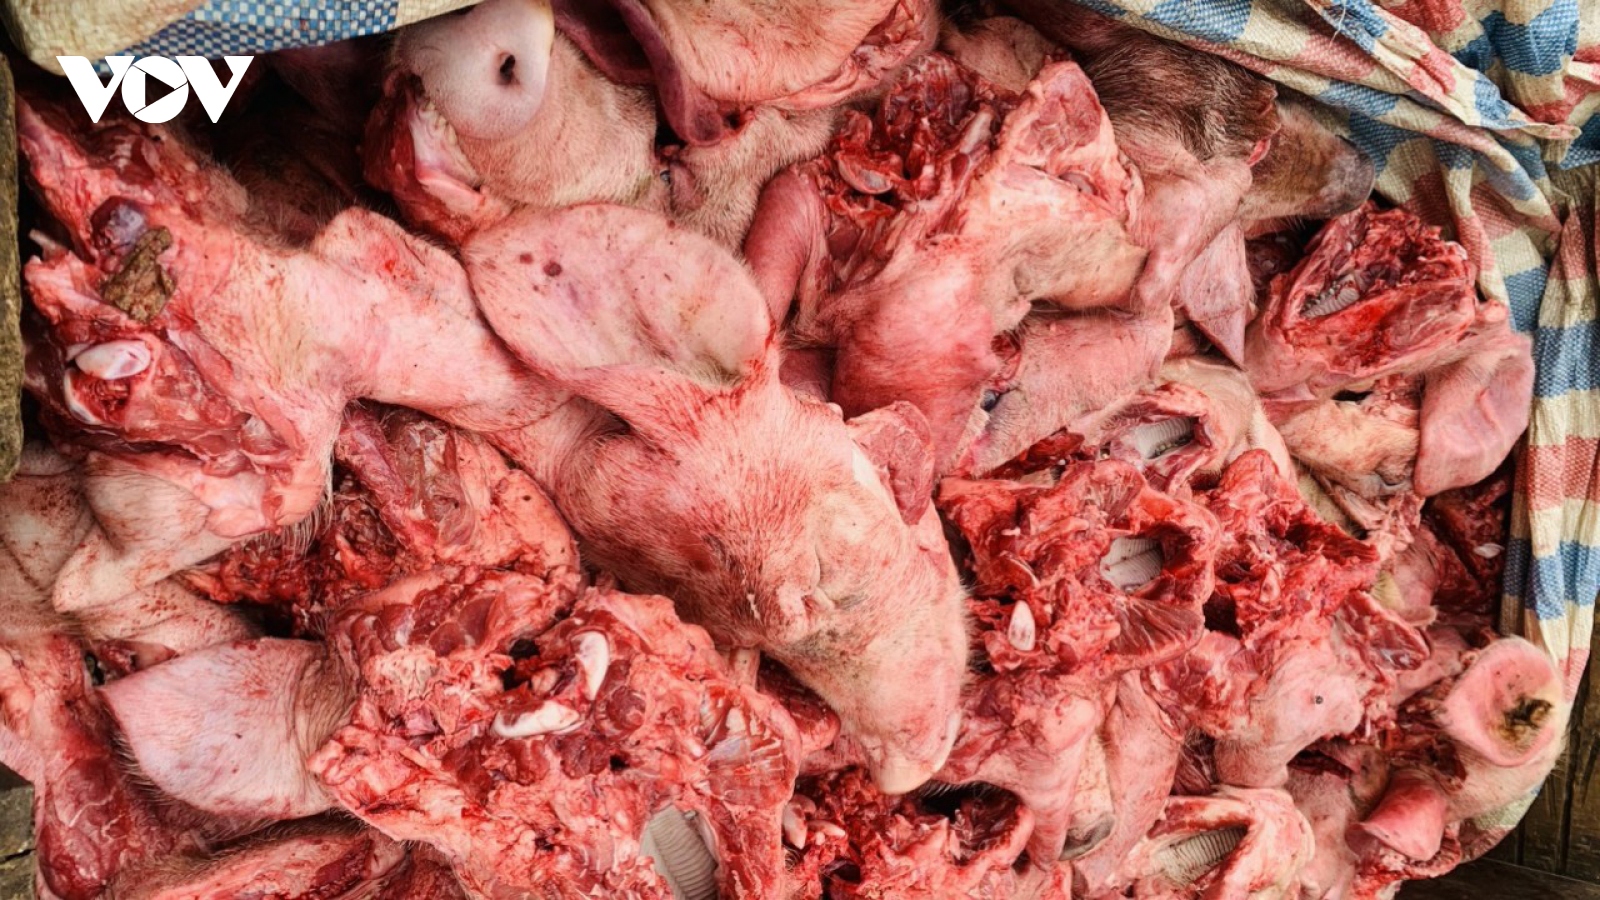 Phát hiện và tiêu hủy 350kg đầu lợn màu sắc tím tái, bốc mùi hôi thối